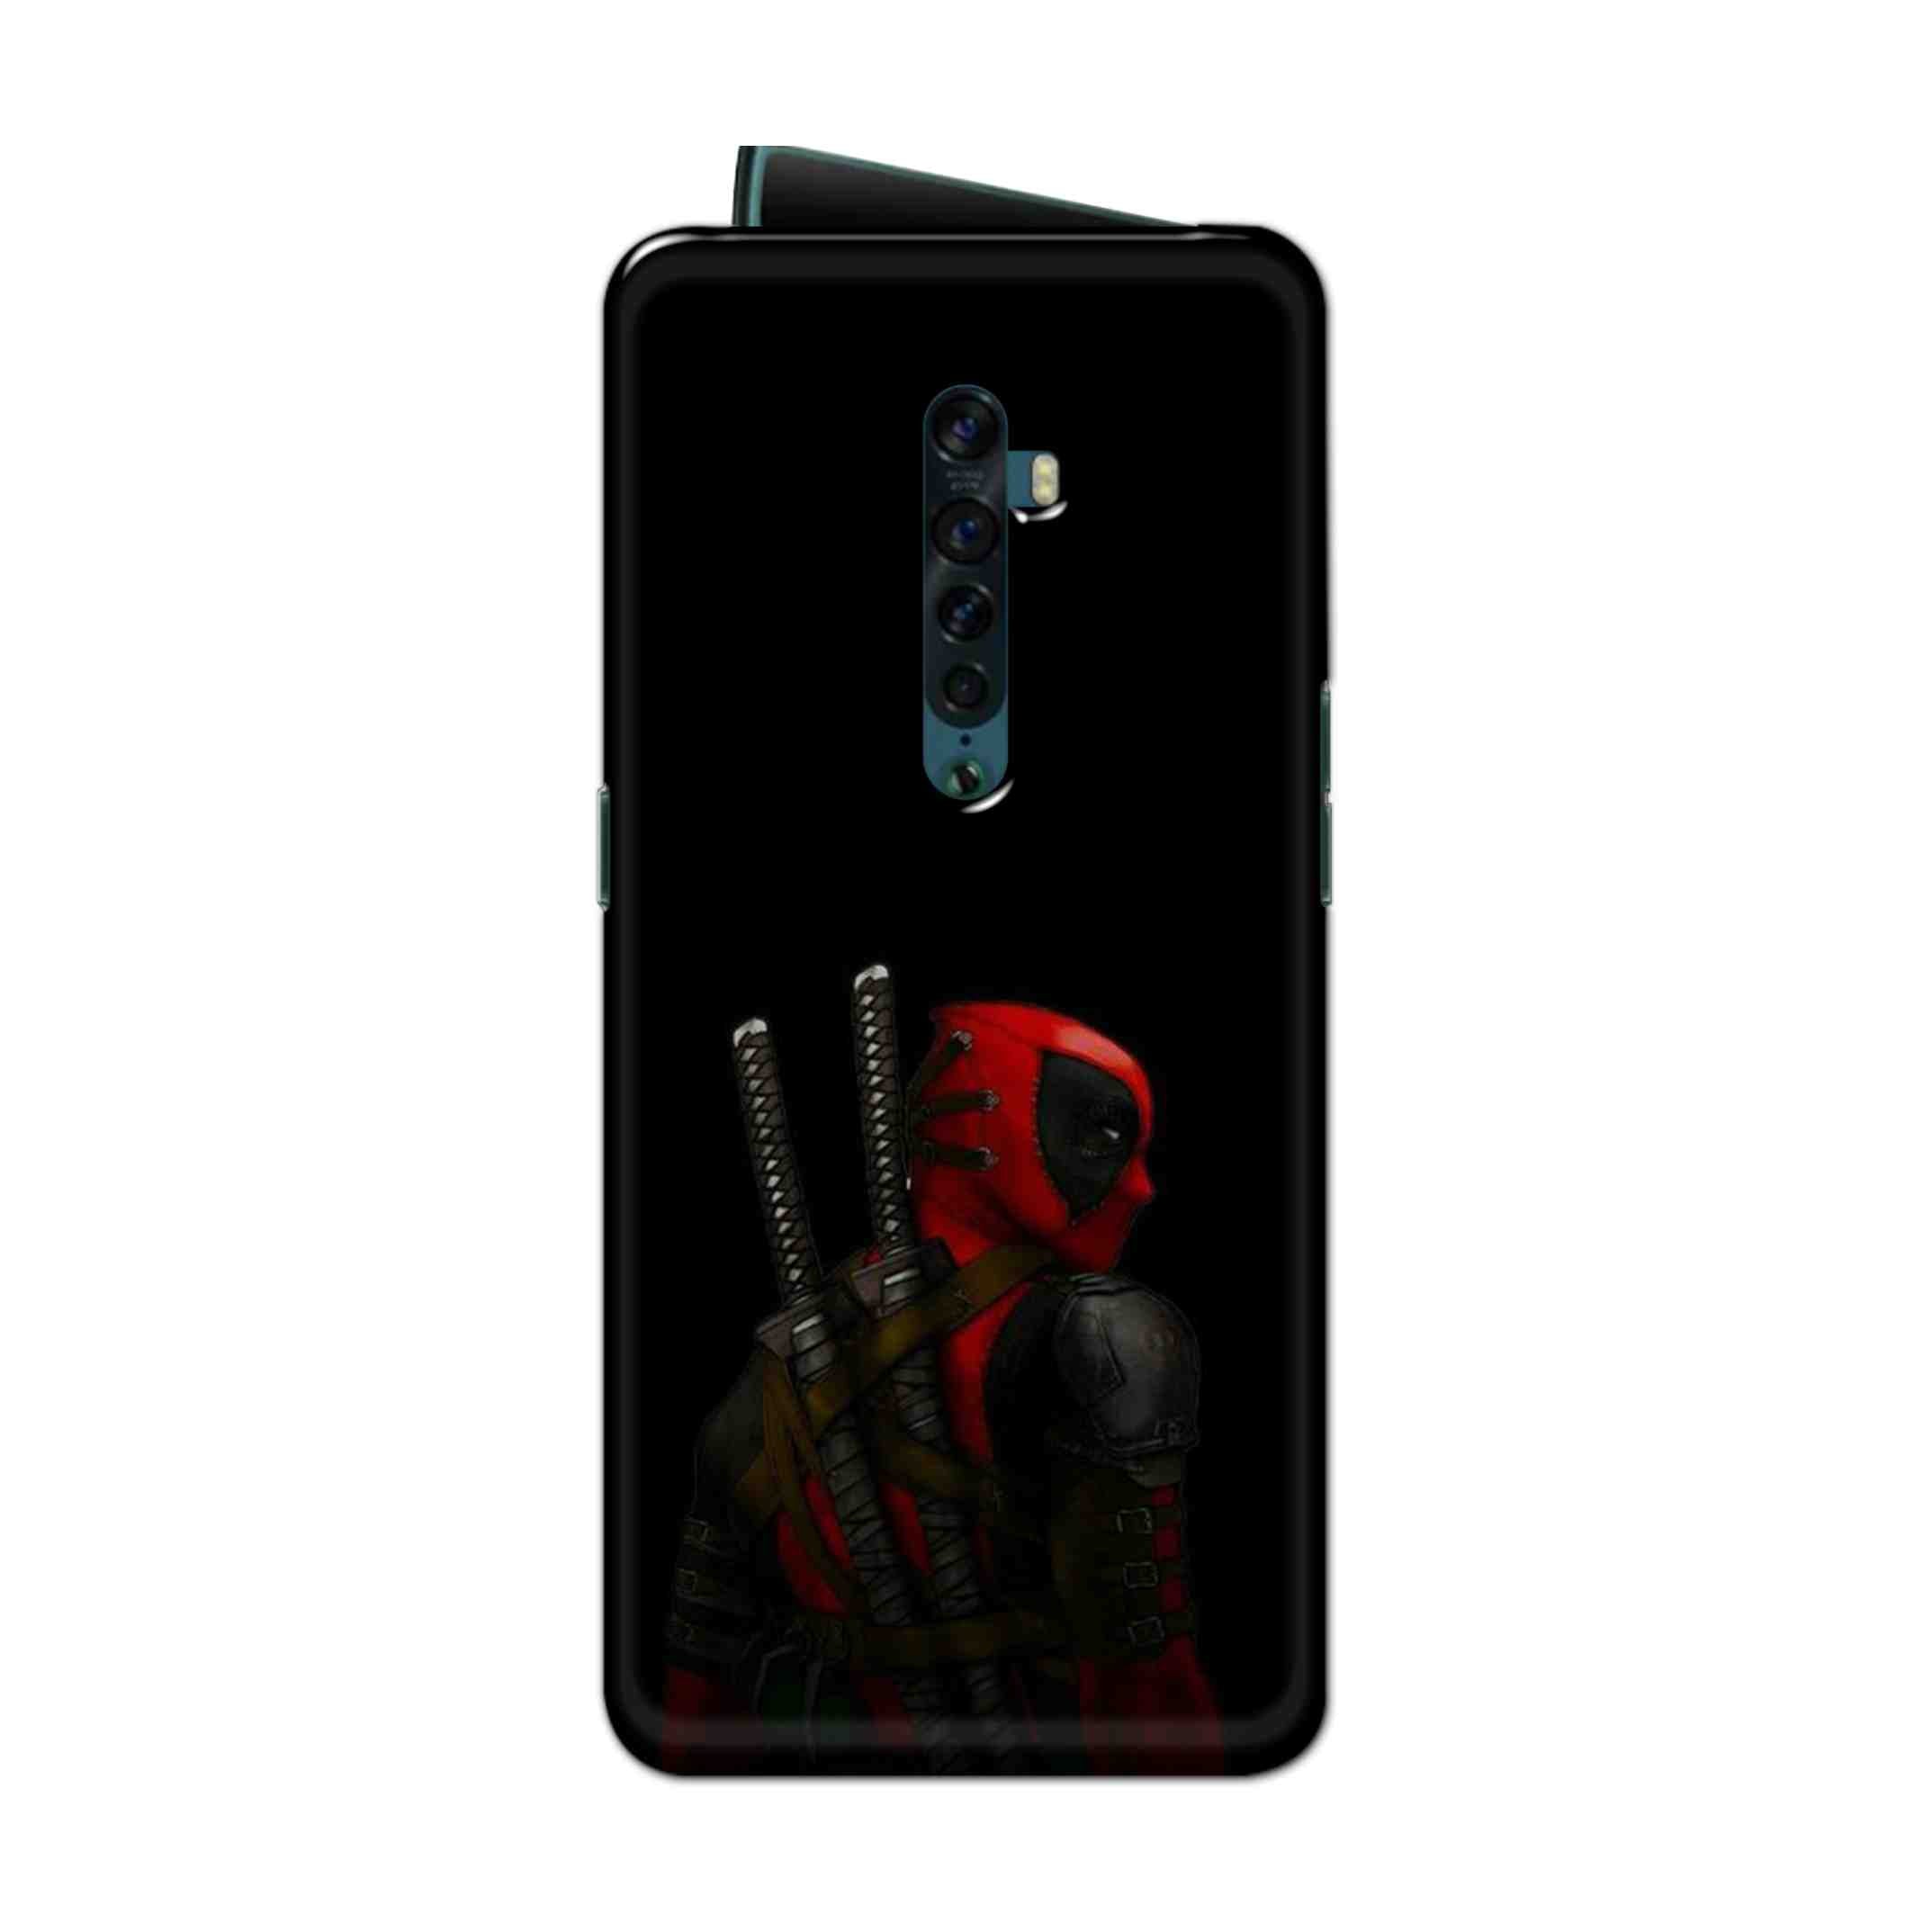 Buy Deadpool Hard Back Mobile Phone Case Cover For Oppo Reno 2 Online